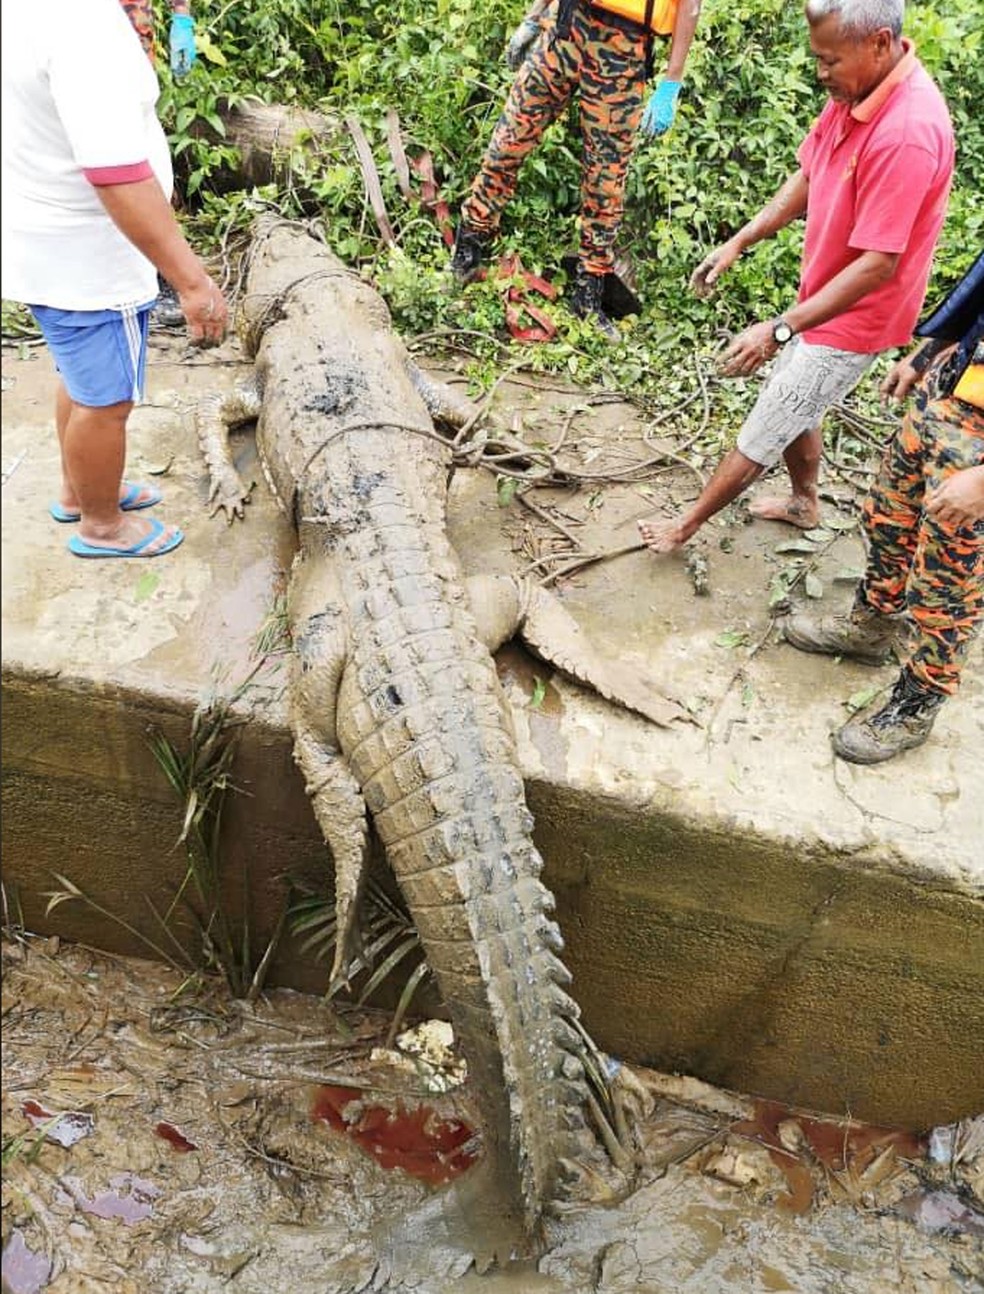 Agentes encontraram na barriga de crocodilo partes de jovem desaparecido na Malásia — Foto: Sarawak Forestry